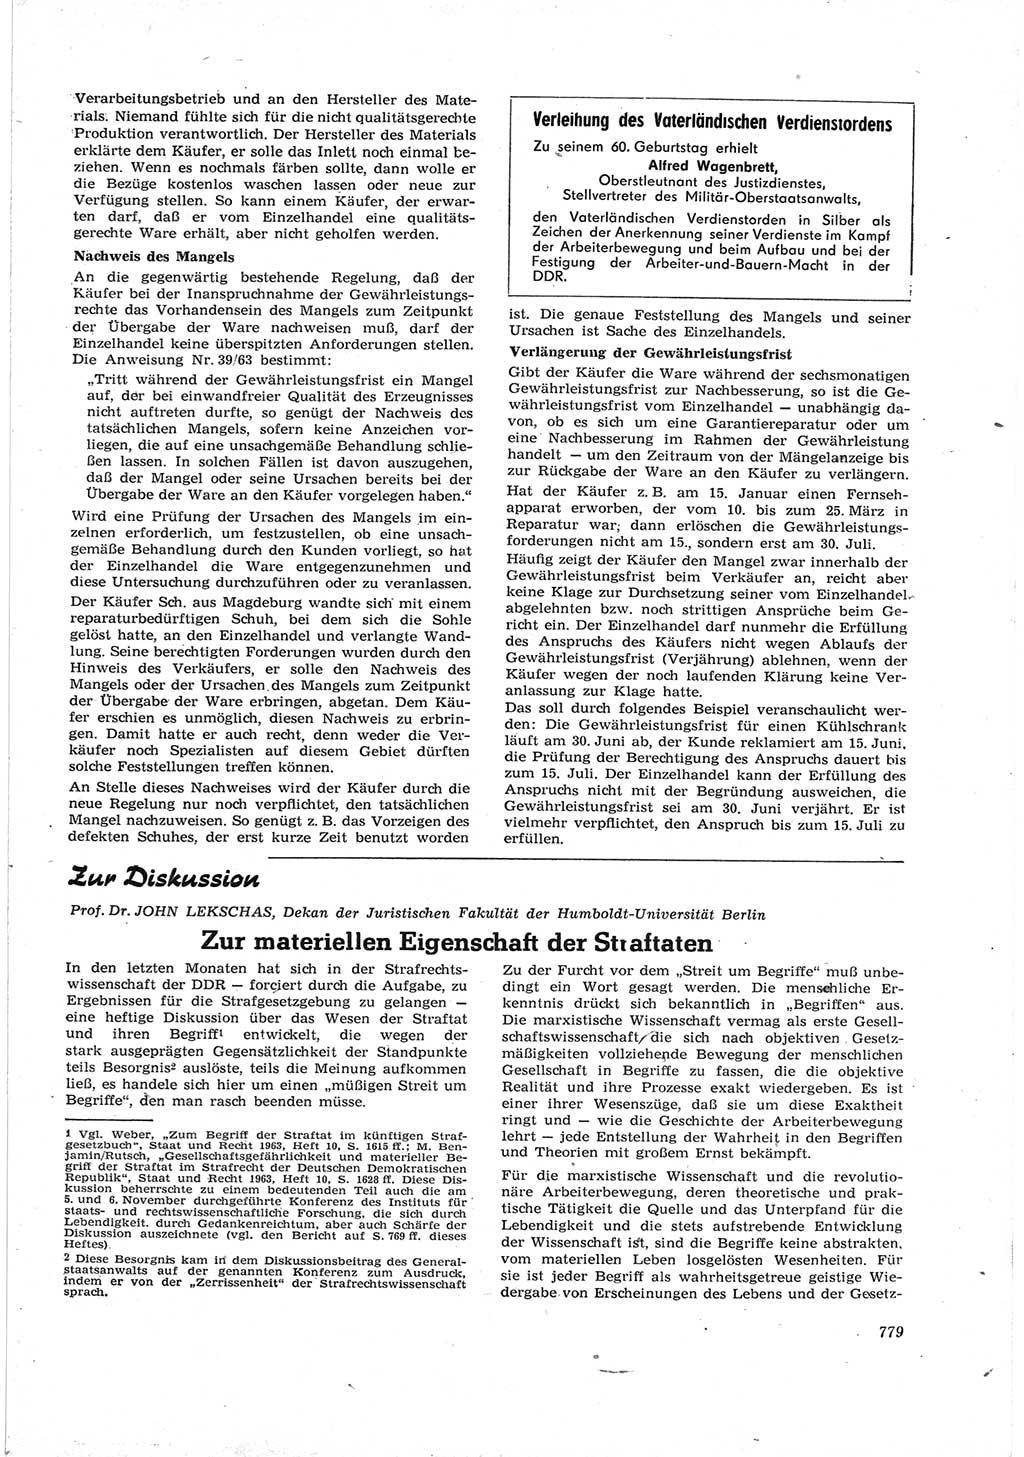 Neue Justiz (NJ), Zeitschrift für Recht und Rechtswissenschaft [Deutsche Demokratische Republik (DDR)], 17. Jahrgang 1963, Seite 779 (NJ DDR 1963, S. 779)